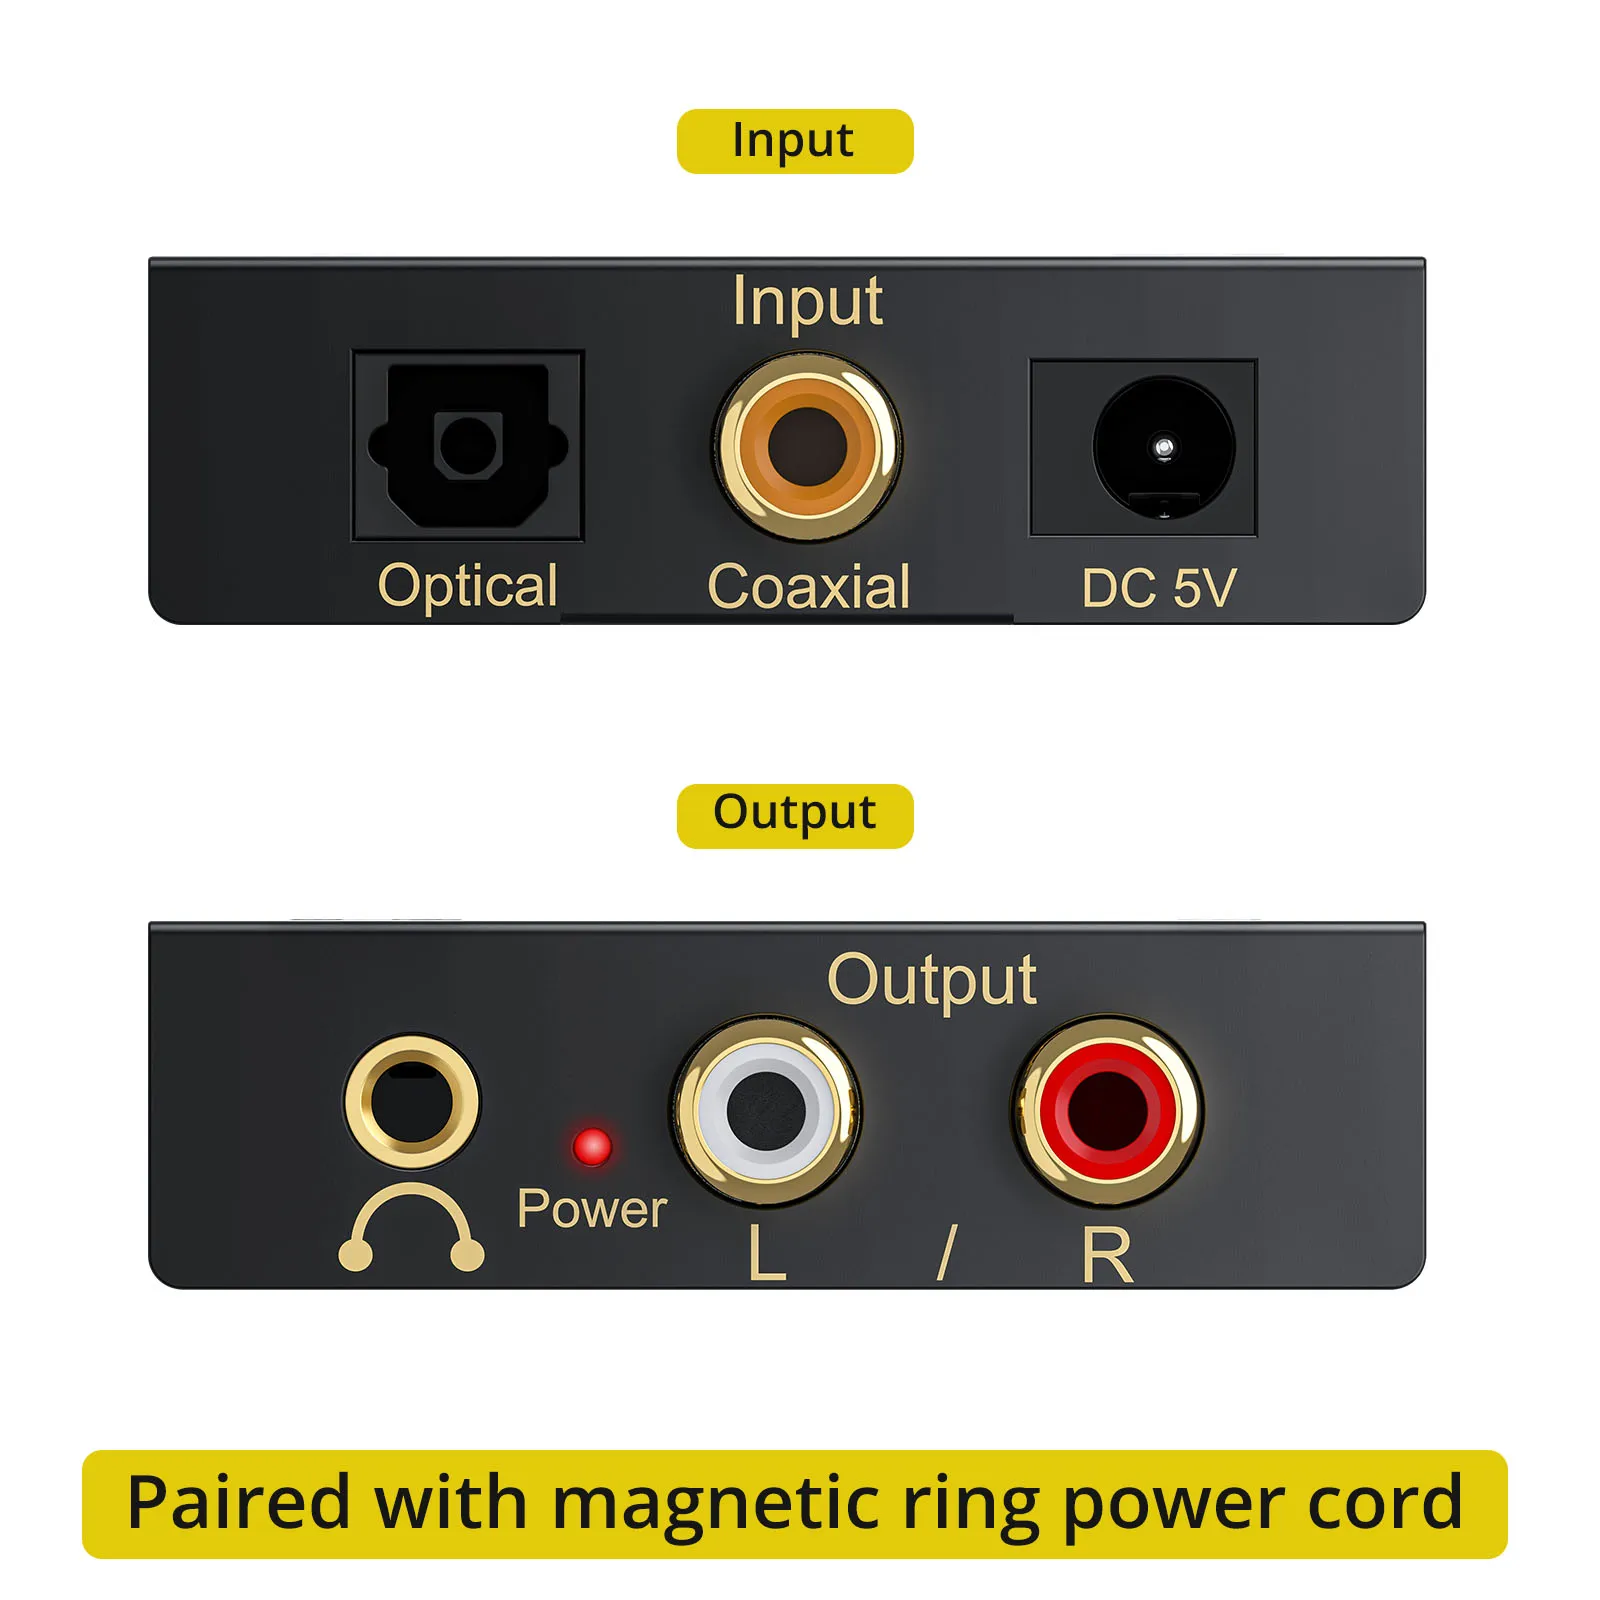 PROZOR – convertisseur Audio numérique-analogique DAC 192kHz, avec  télécommande IR, Toslink Coaxial optique vers RCA, adaptateur Jack 3.5mm -  AliExpress